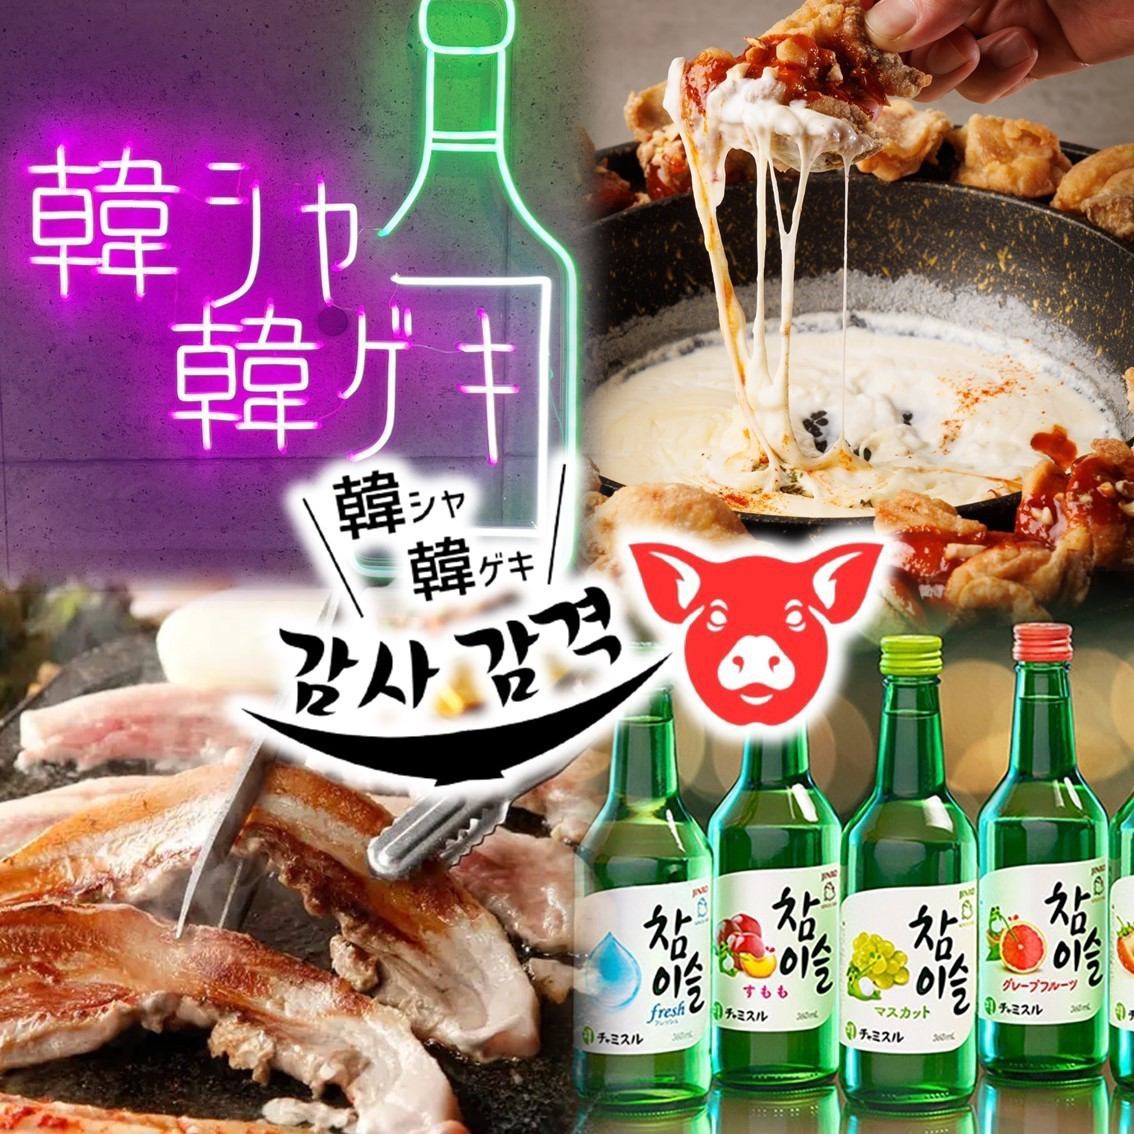 周六、周日、节假日从14:00开始营业！！最适合午餐喝饮料的韩国餐厅♪